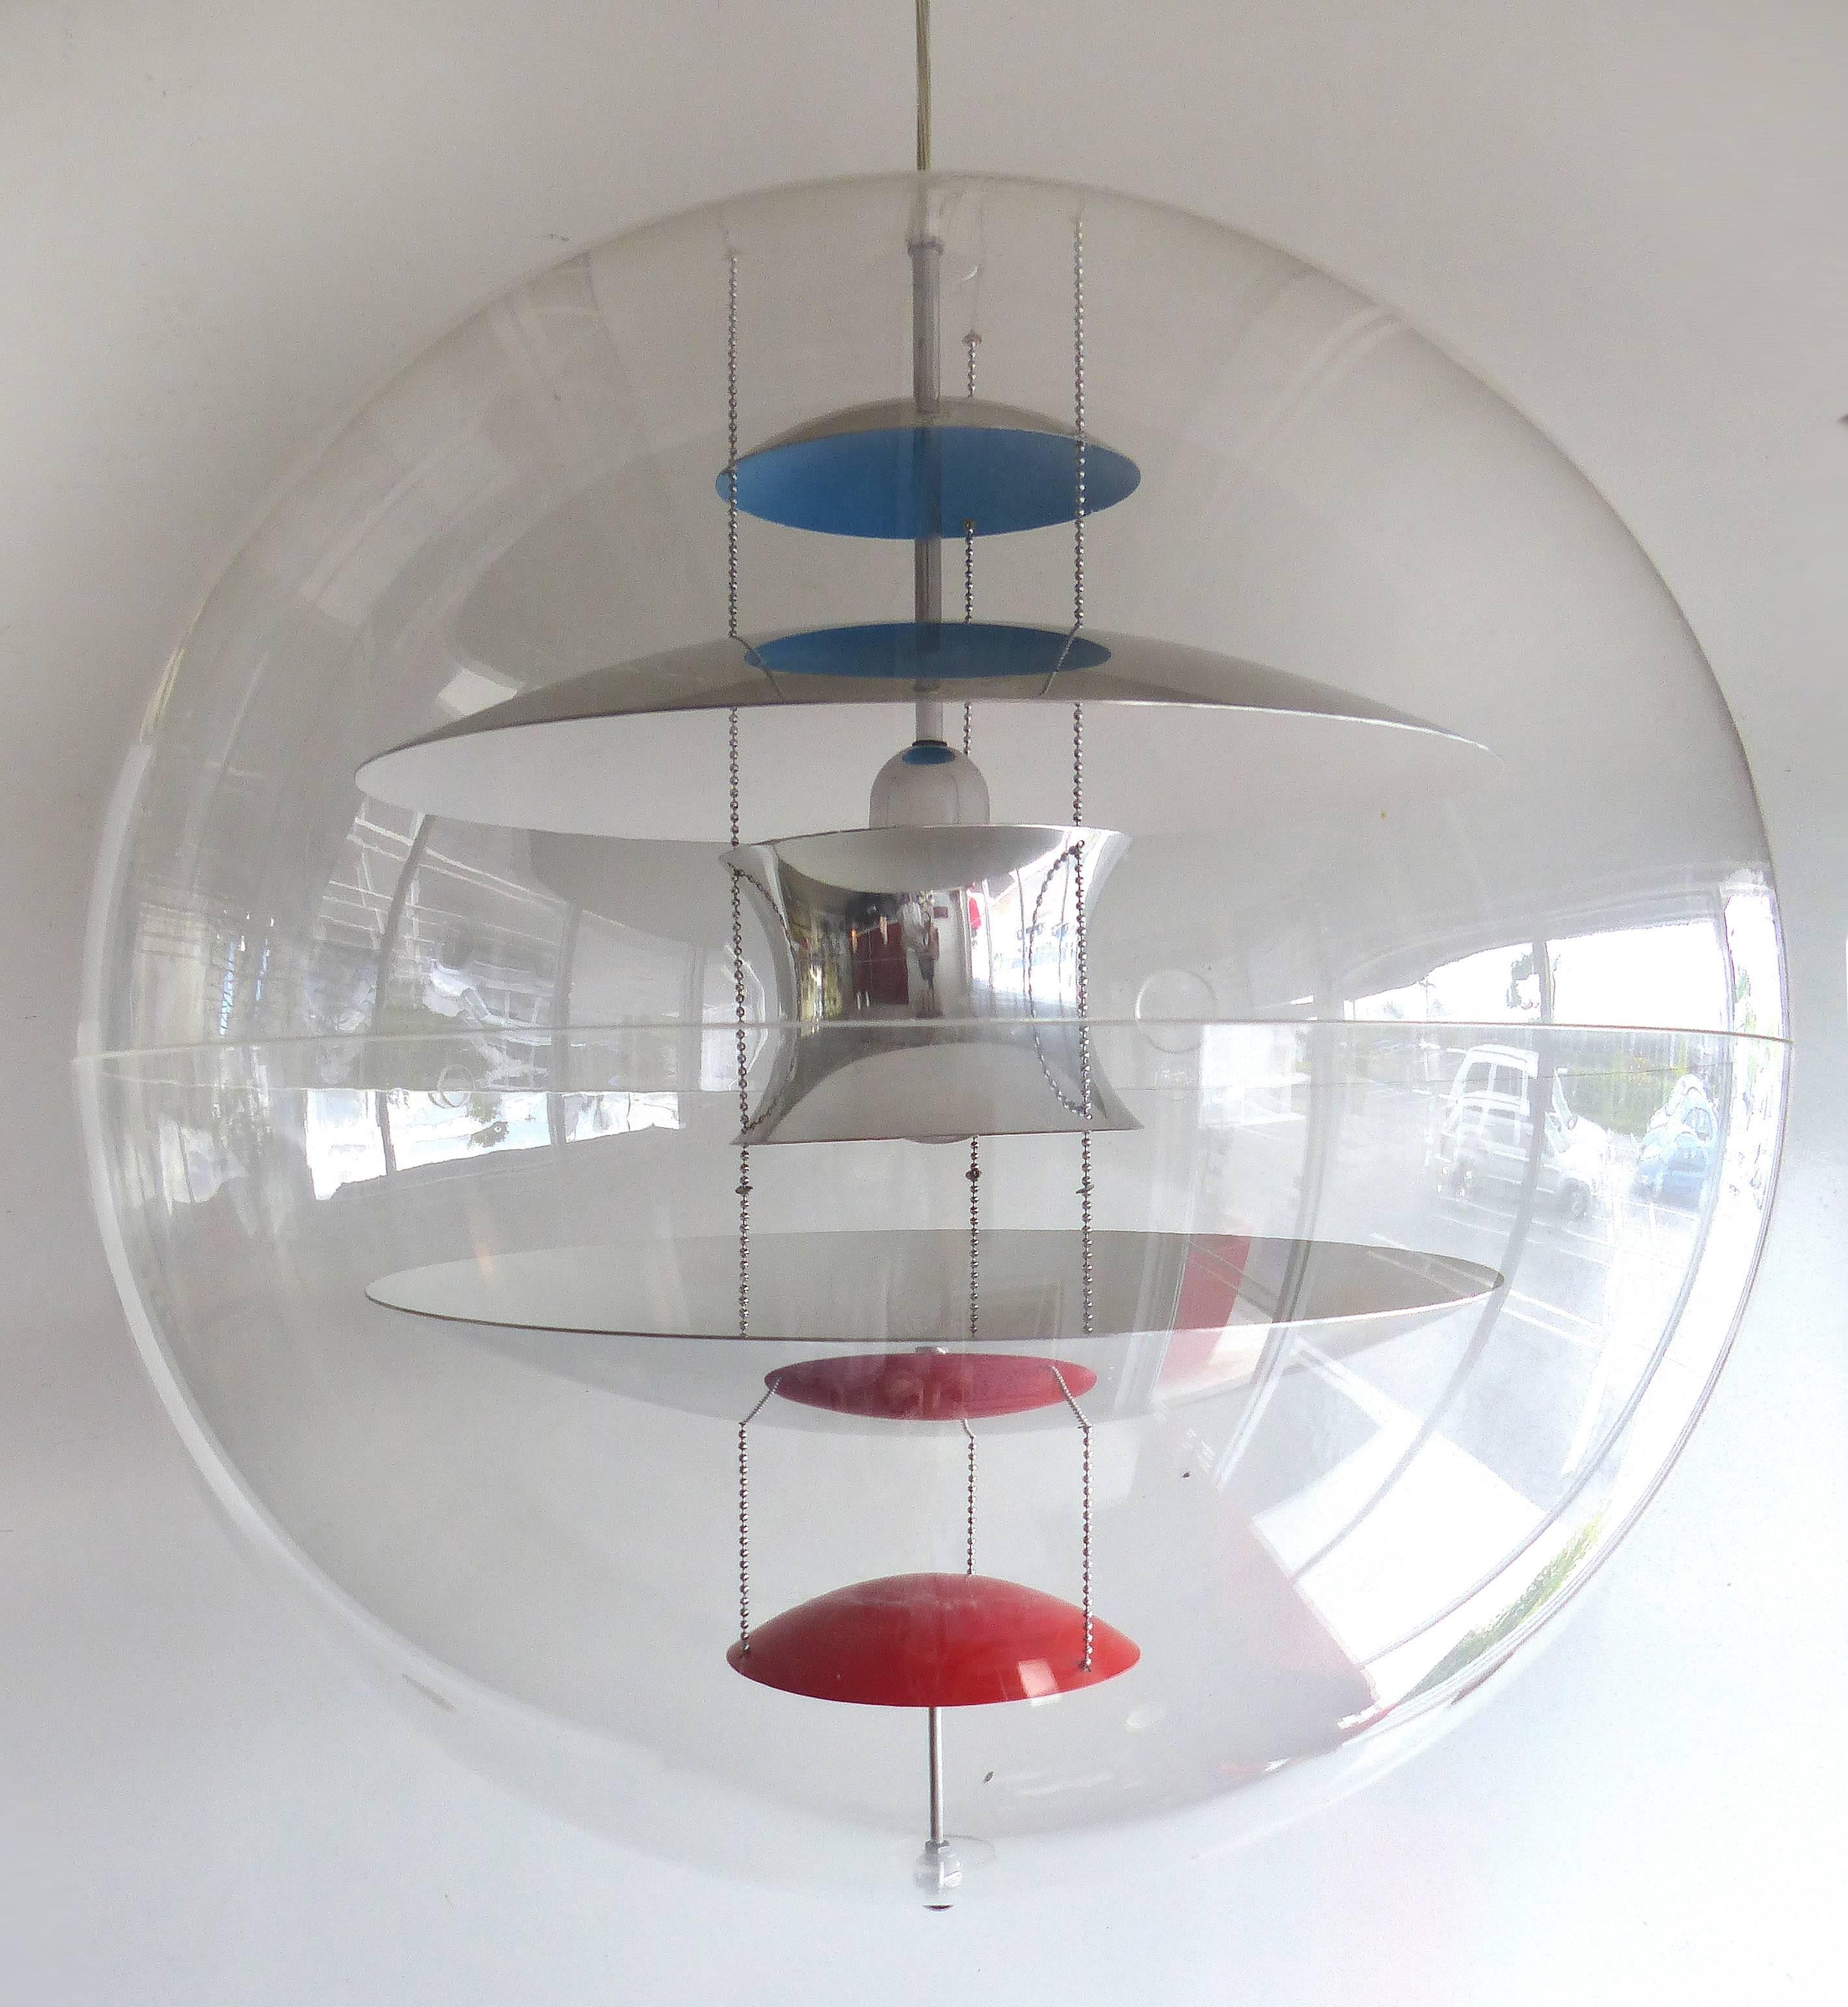 Die VP-Kugelleuchte wurde in den 1960er Jahren von Verner Panton für Louis Poulsen in Dänemark entworfen. Diese hängend montierte Glühlampe besteht aus fünf Reflektoren in Aluminiumschirmen mit einer lackierten farbigen Oberfläche. Diese Reflektoren